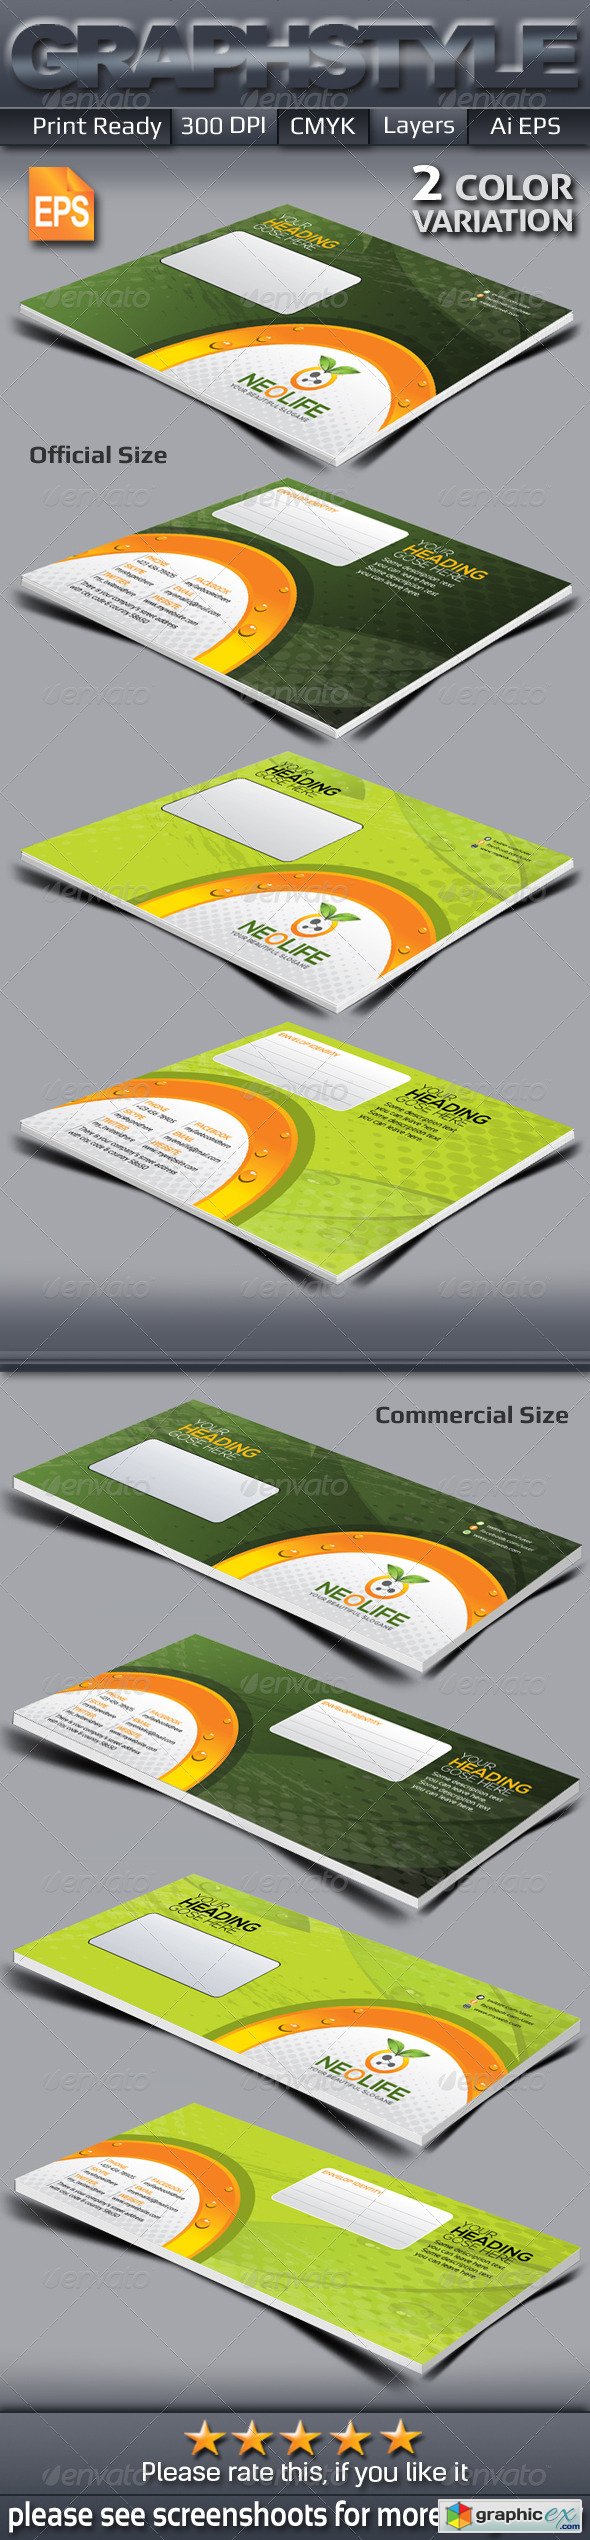 Neolife Envelop Packaging